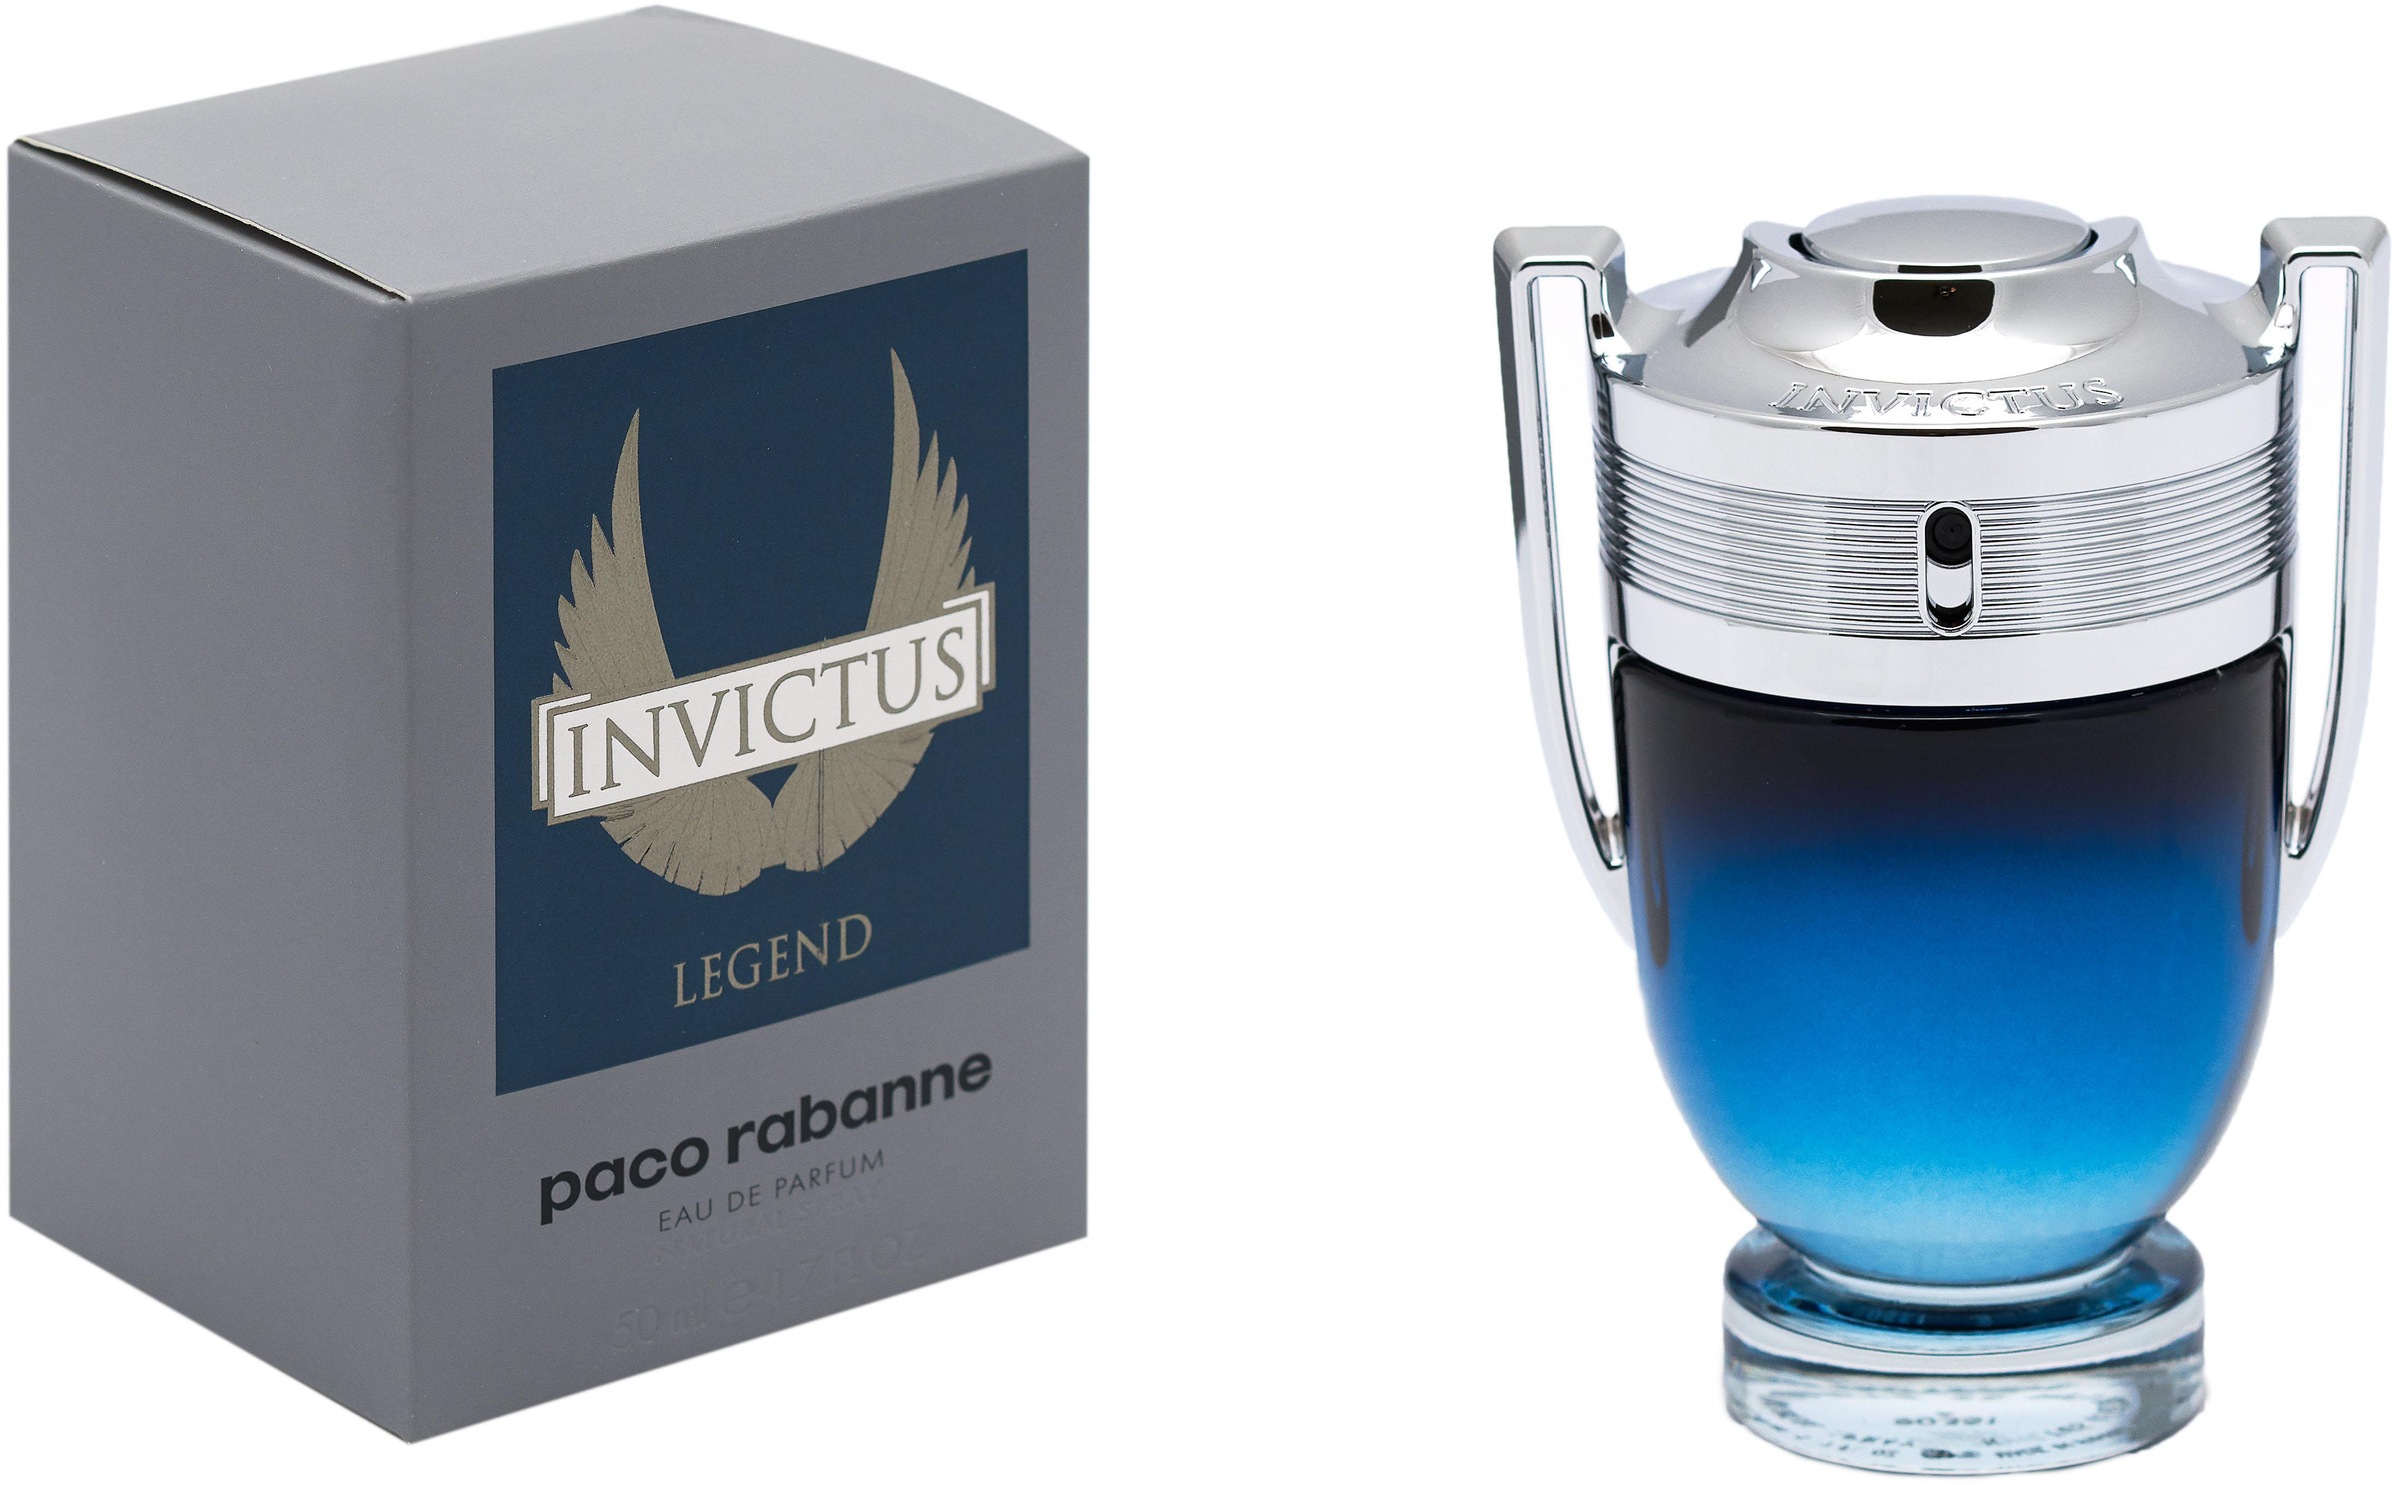 paco rabanne Eau de Parfum »Invictus Legend«